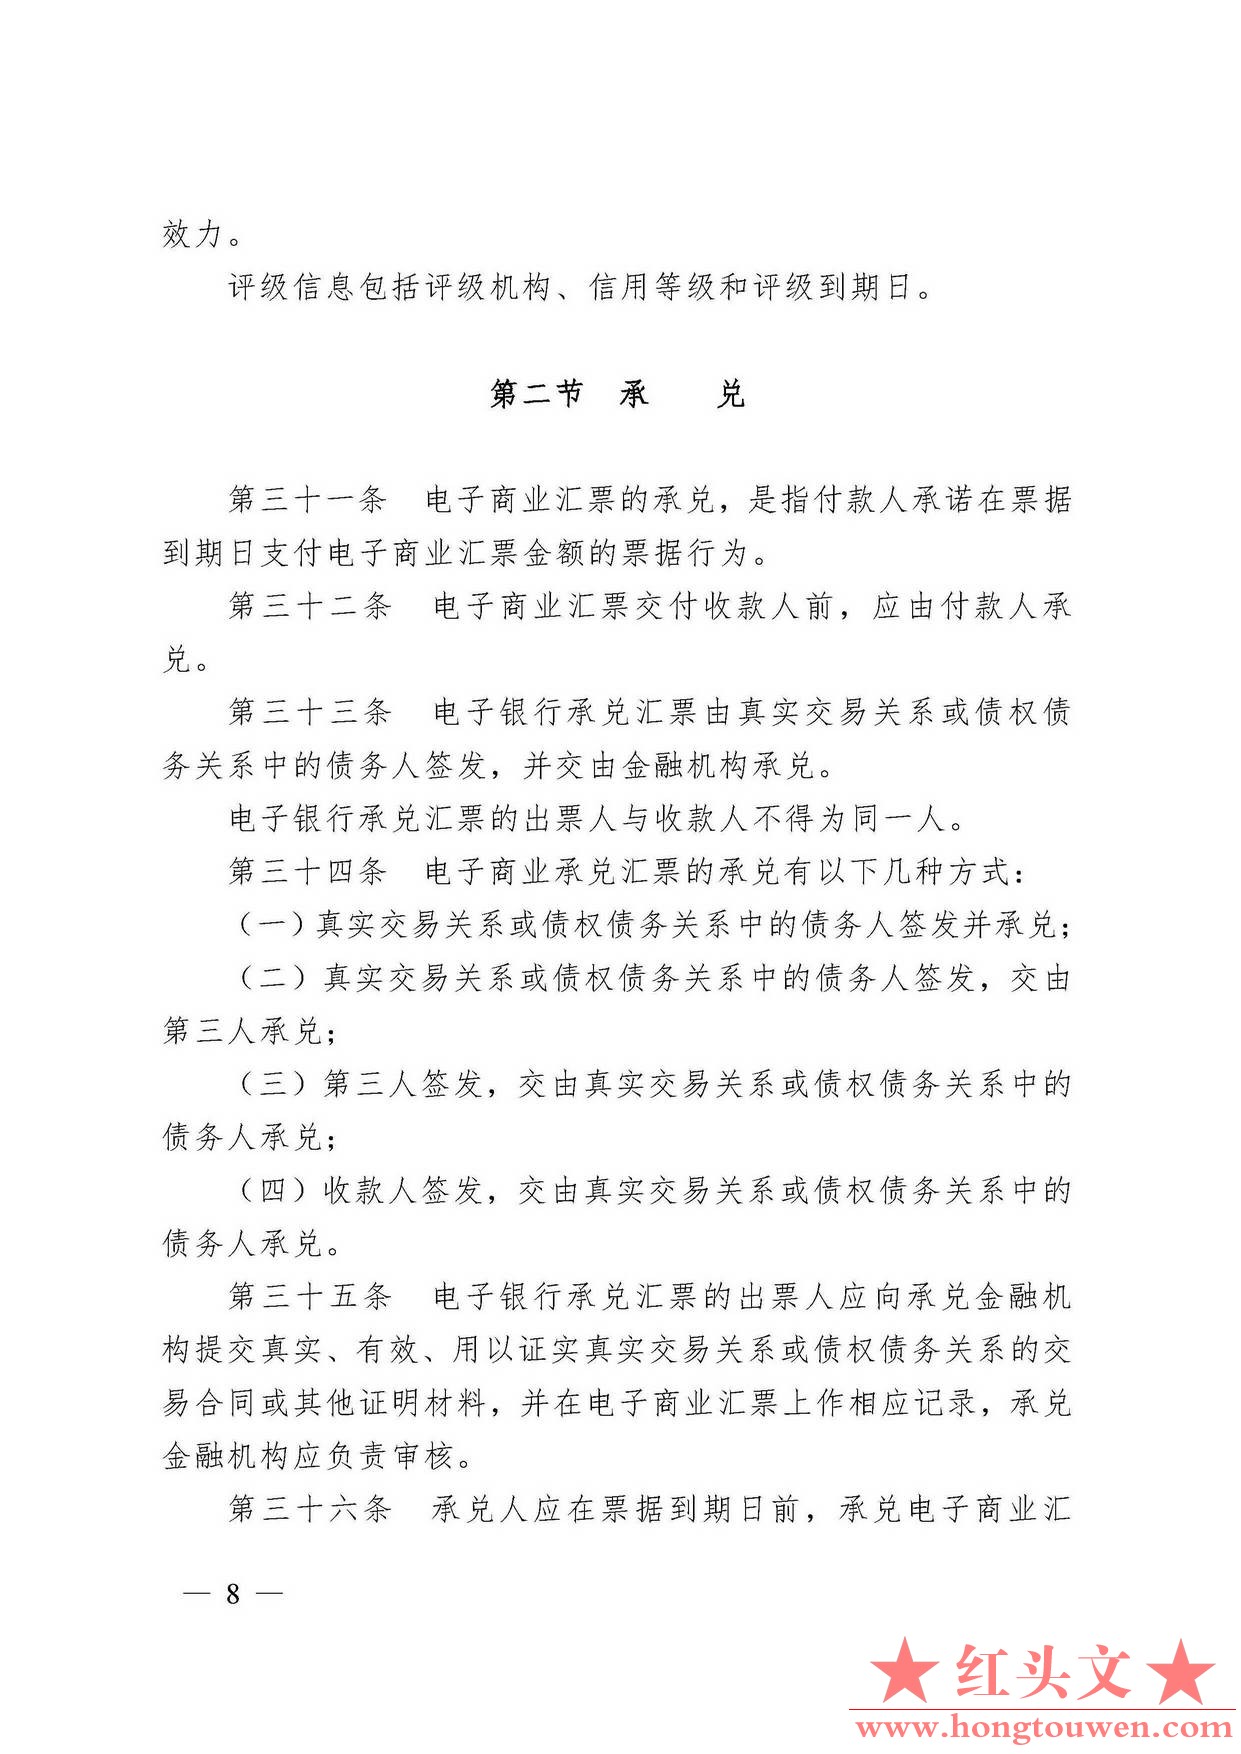 中国人民银行令[2009]2号-电子商业汇票管理办法_页面_08.jpg